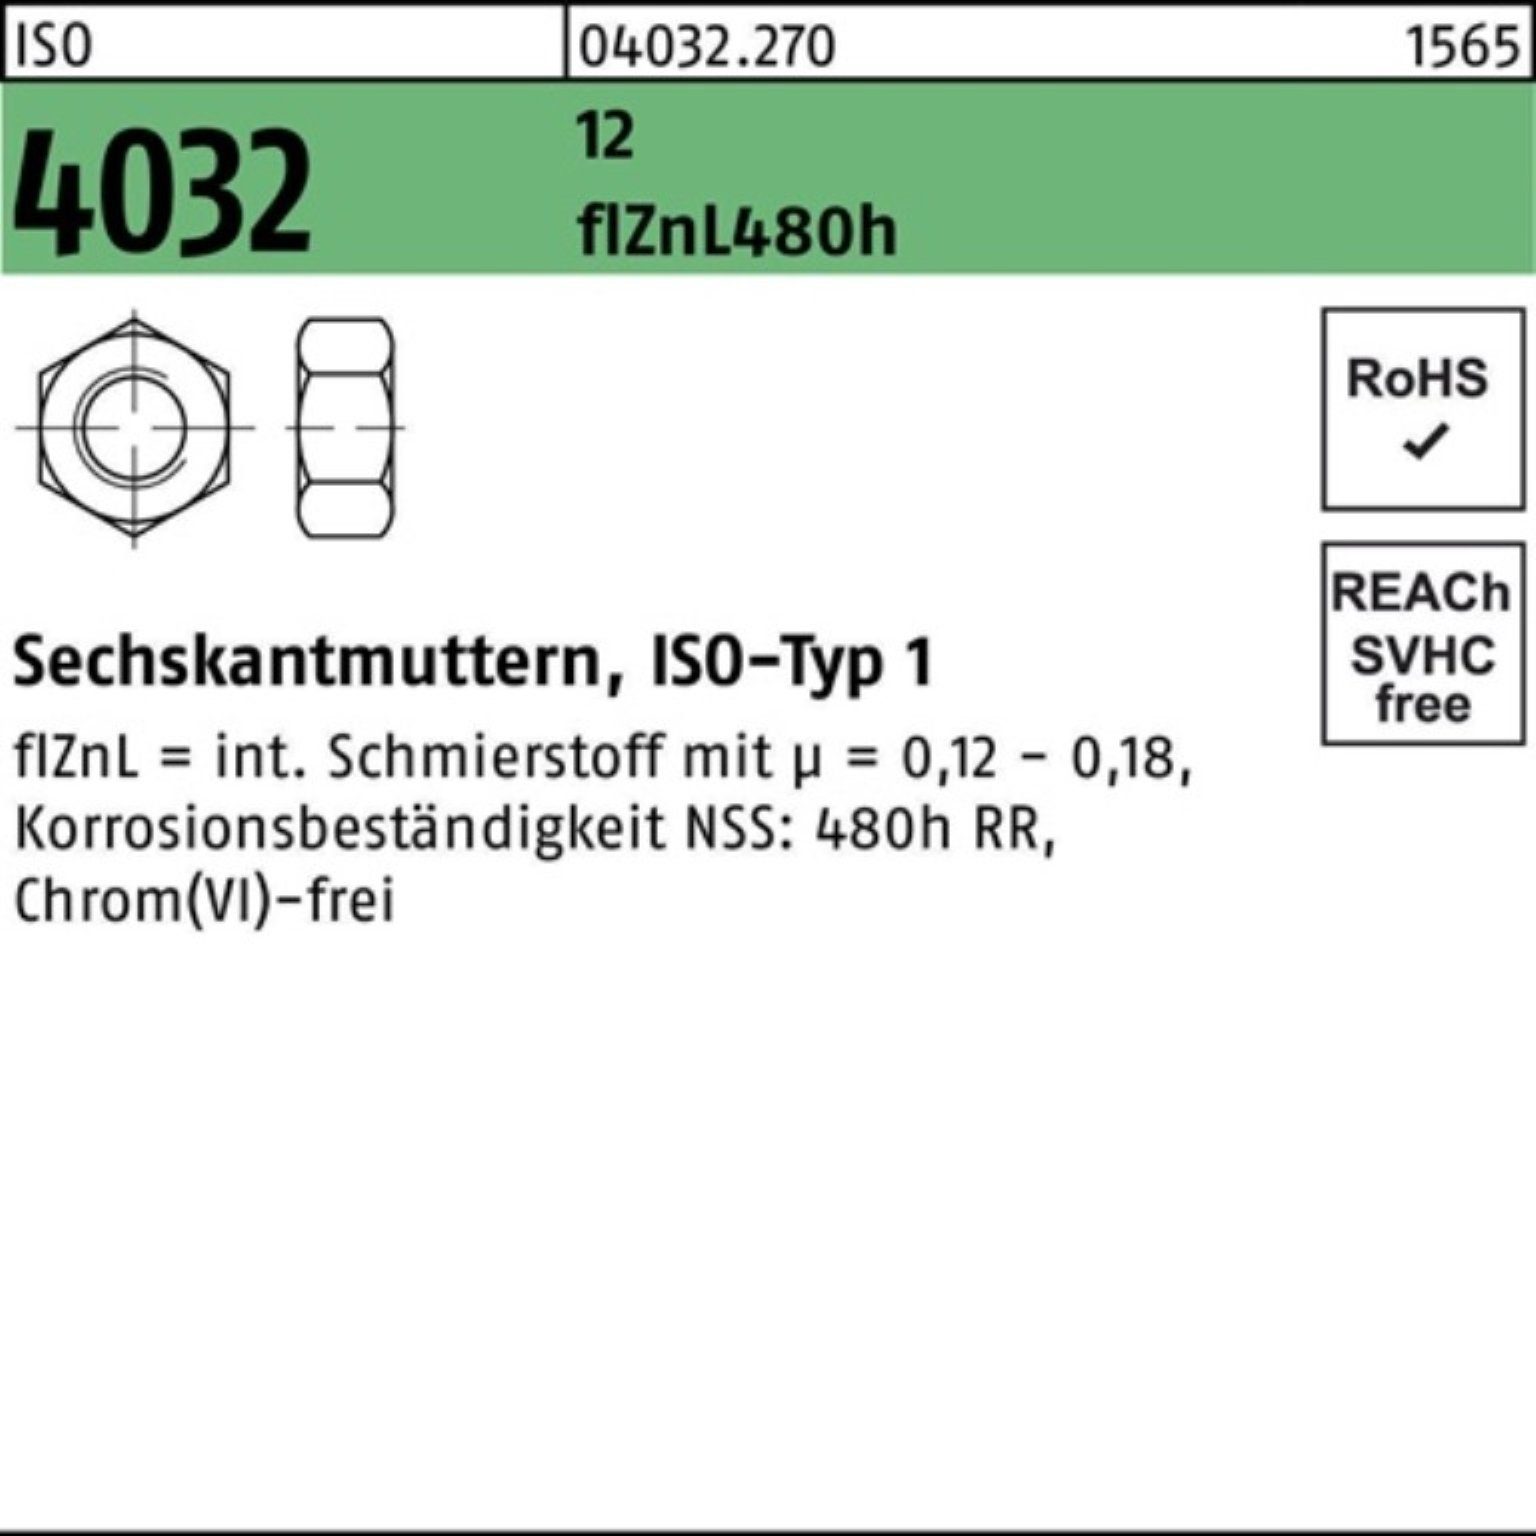 Muttern 4032 Bufab flZnL 1 ISO Sechskantmutter zinklamellenb. 100er Pack 480h M10 12